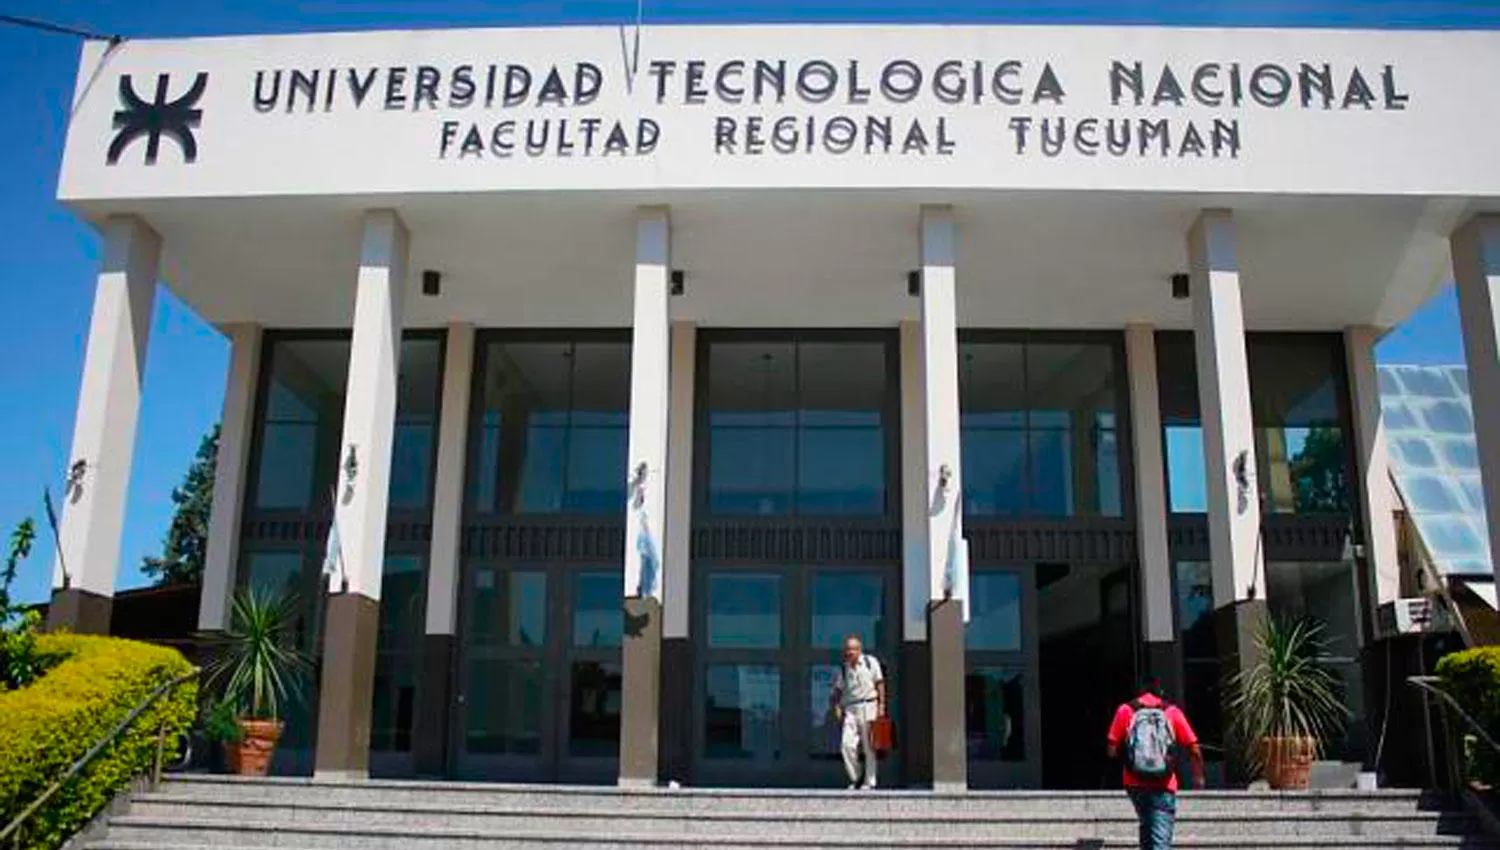 ACUERDO. La Universidad Tecnológica Nacional (regional Tucumán) y la Academia Nacional de Folklore firmaron un acuerdo para promover la cultura nativa.